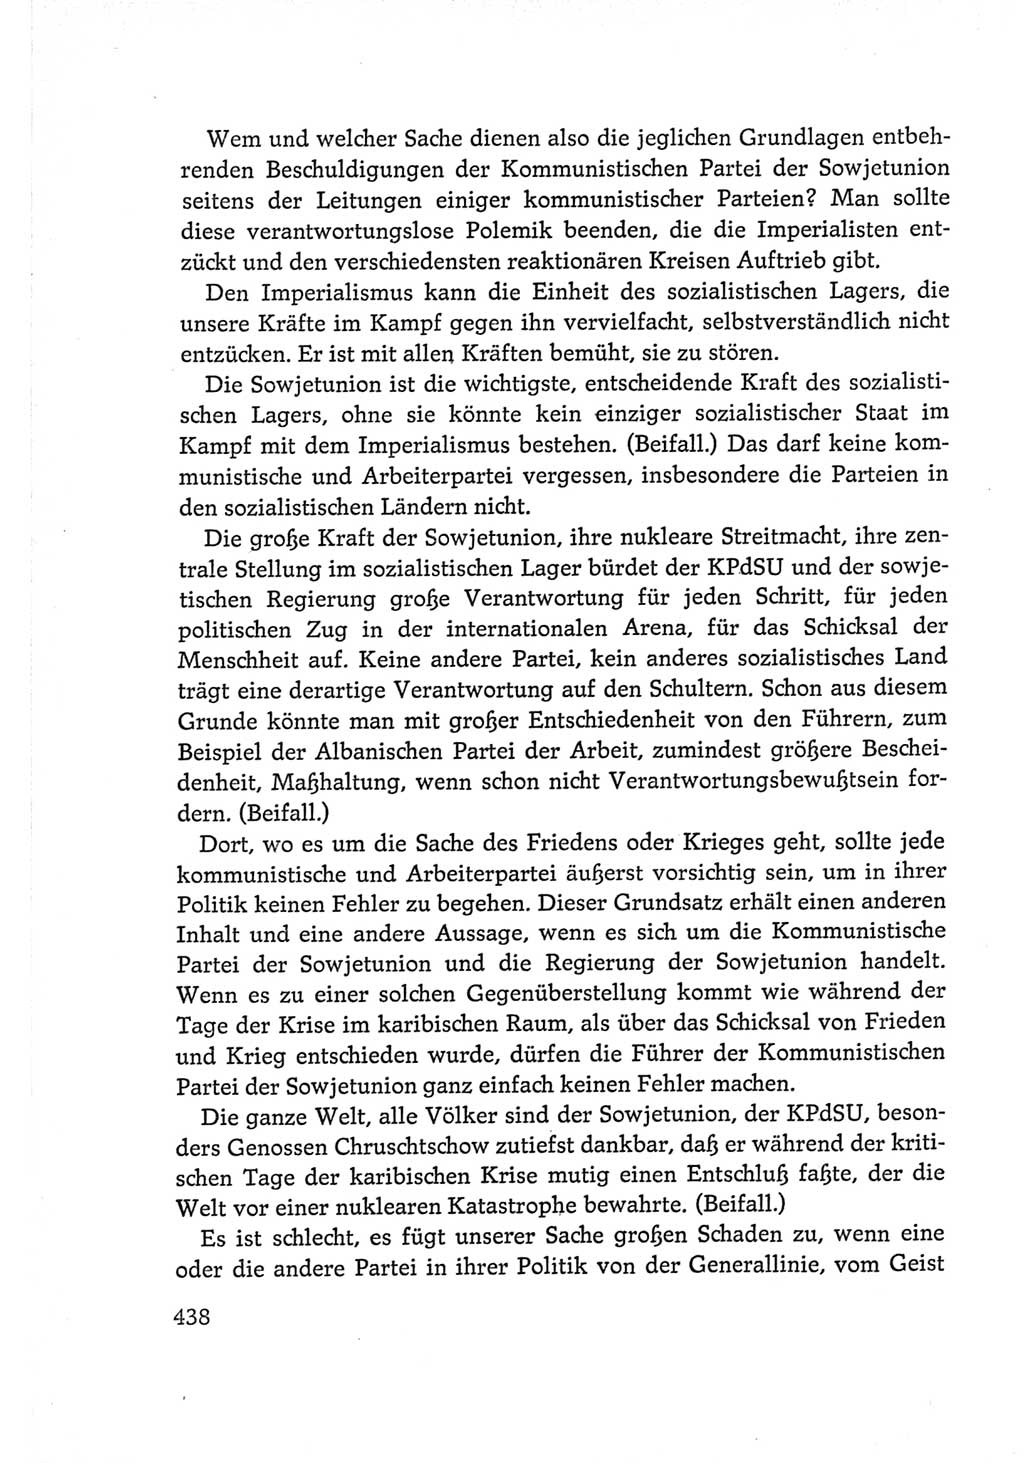 Protokoll der Verhandlungen des Ⅵ. Parteitages der Sozialistischen Einheitspartei Deutschlands (SED) [Deutsche Demokratische Republik (DDR)] 1963, Band Ⅰ, Seite 438 (Prot. Verh. Ⅵ. PT SED DDR 1963, Bd. Ⅰ, S. 438)